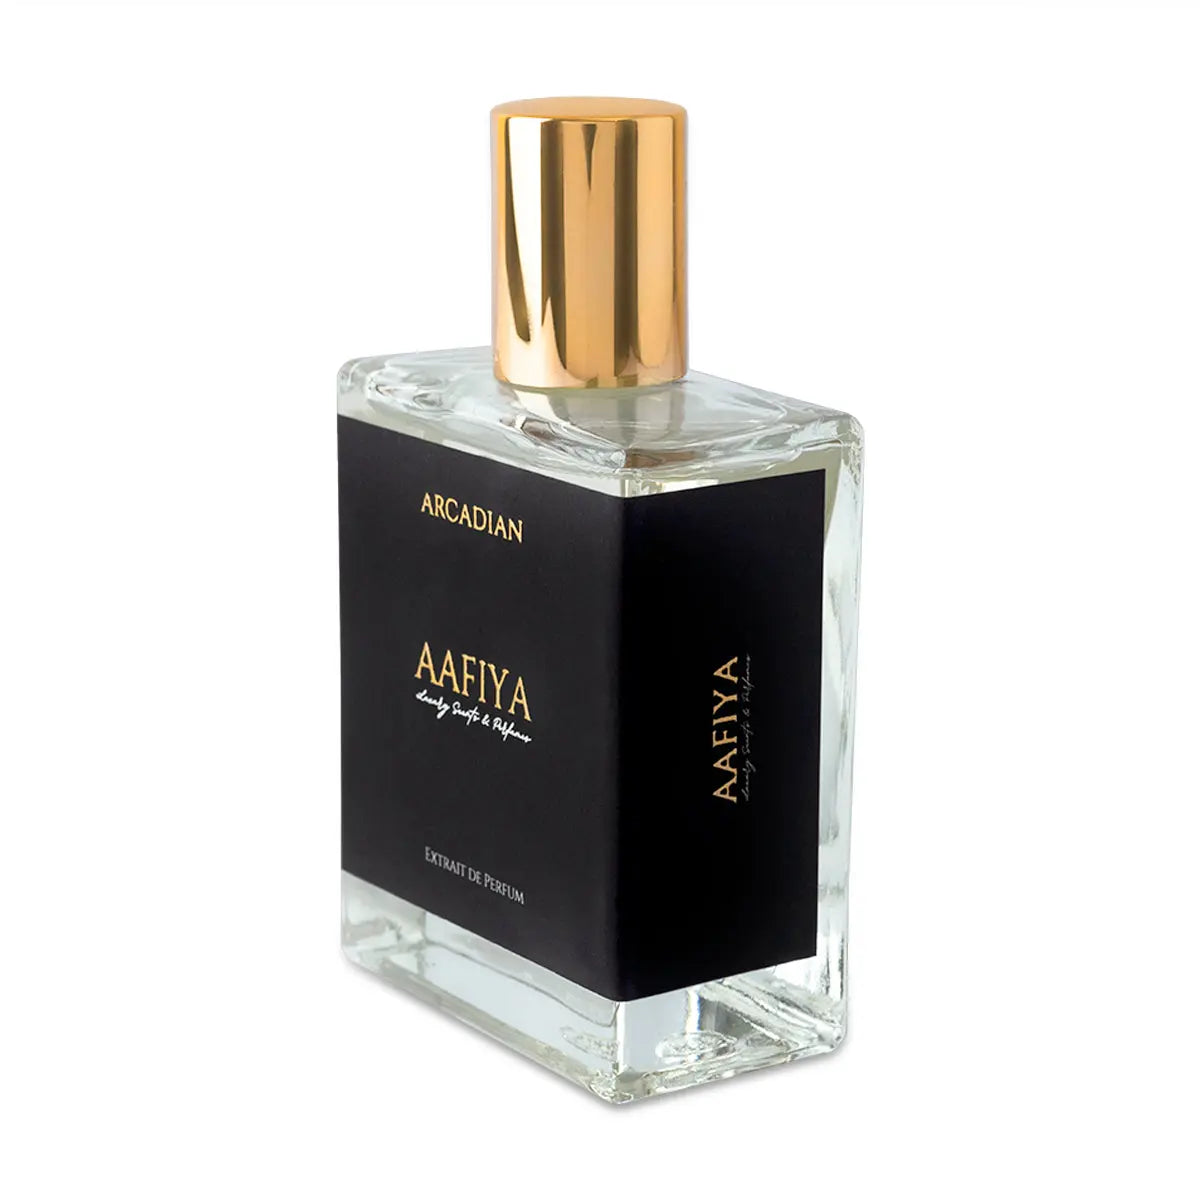 Arcadian Aafiya Luxury Scents & Perfumes